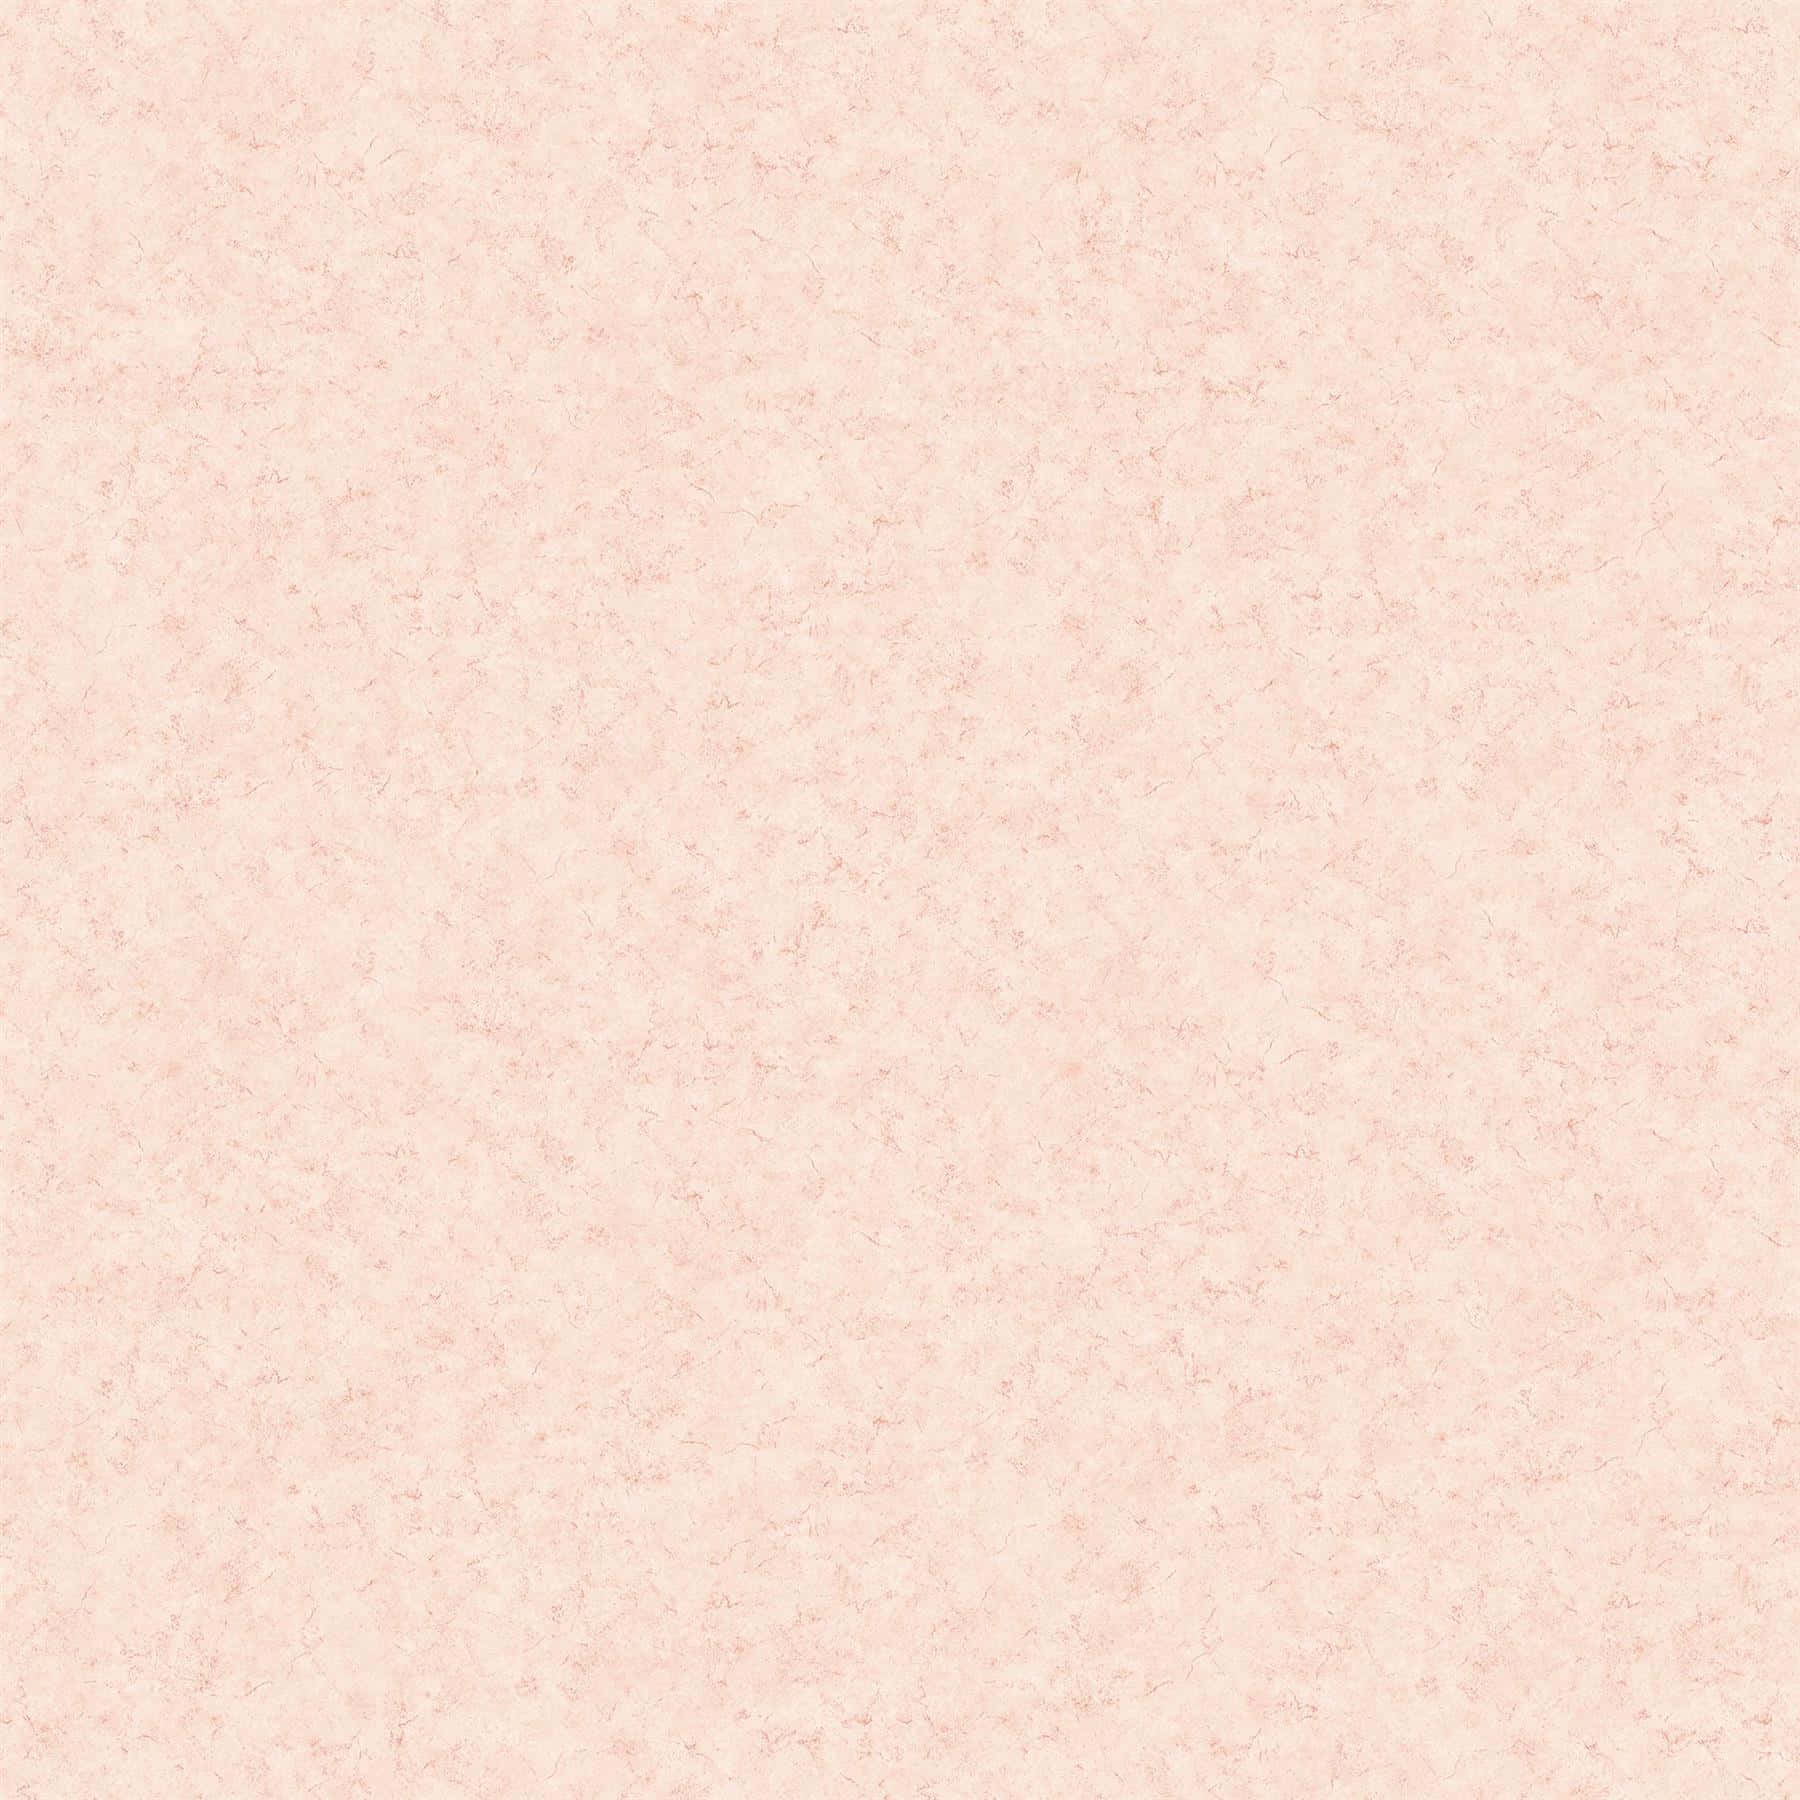 Blush Pink Texture Background